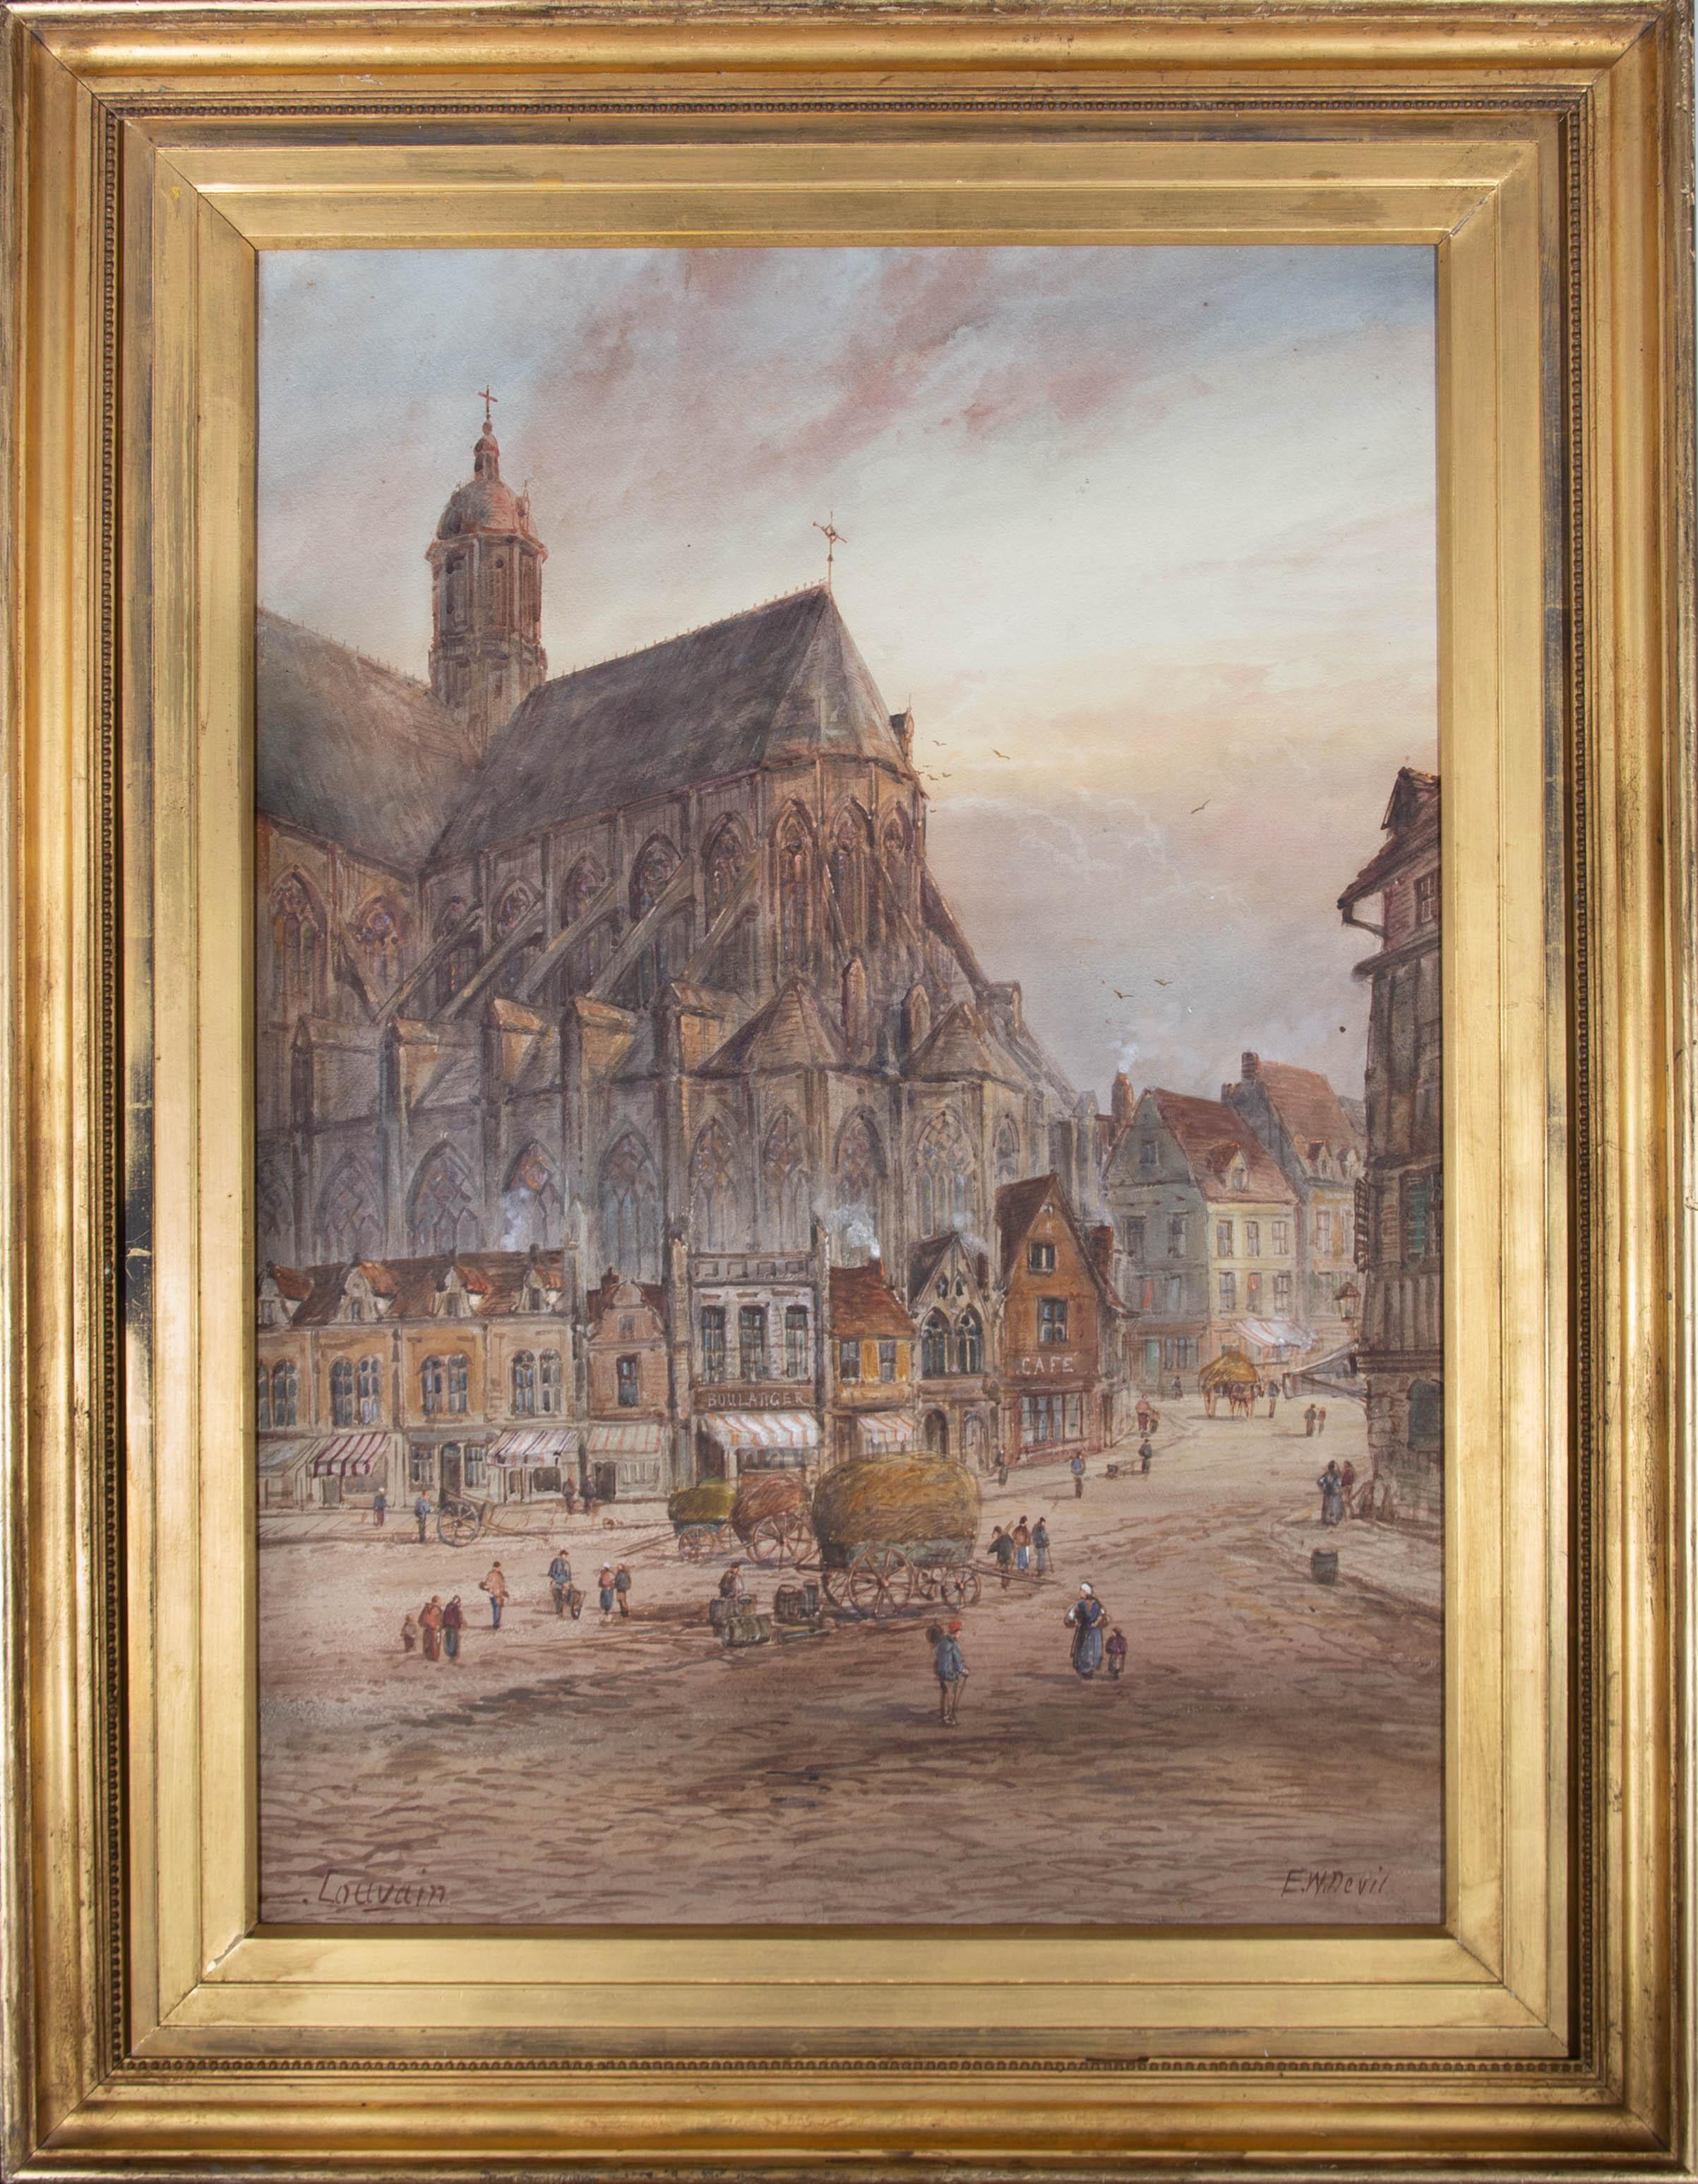 Eine belebte Straßenszene vor der St.-Peter-Kirche in Leuven, Belgien, einer römisch-katholischen Kirche, die im 15. Jahrhundert im Stil der Brabantinischen Gotik erbaut wurde. Präsentiert in einem großen, vergoldeten Rahmen und in einer Hülle. Am